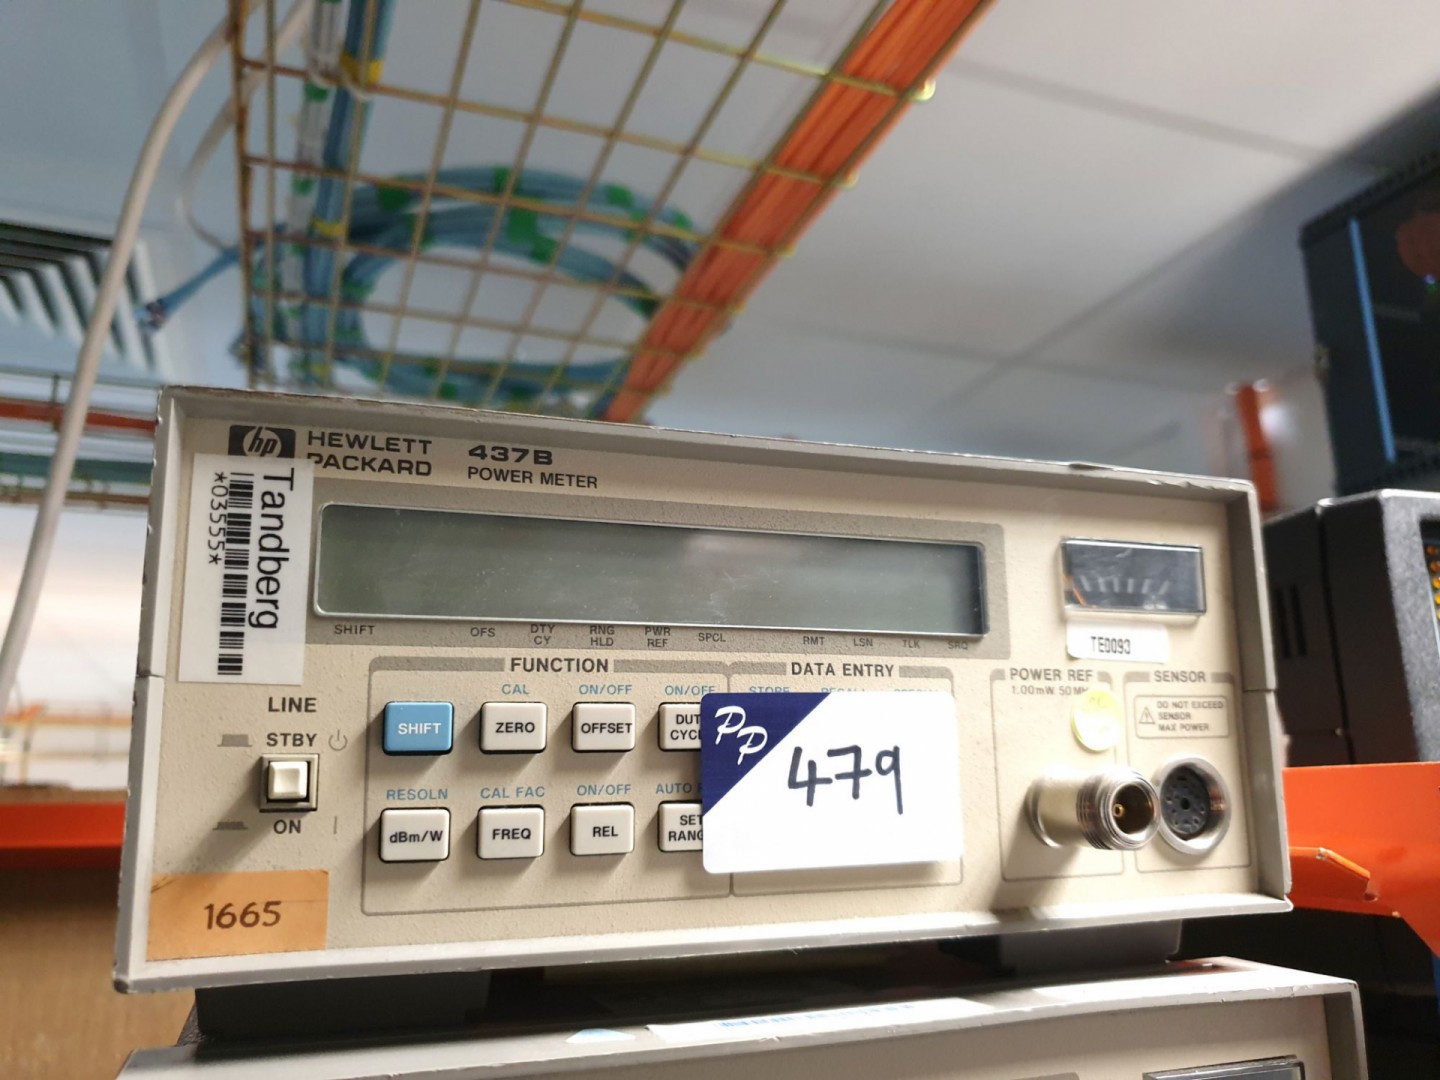 HP 437B power meter